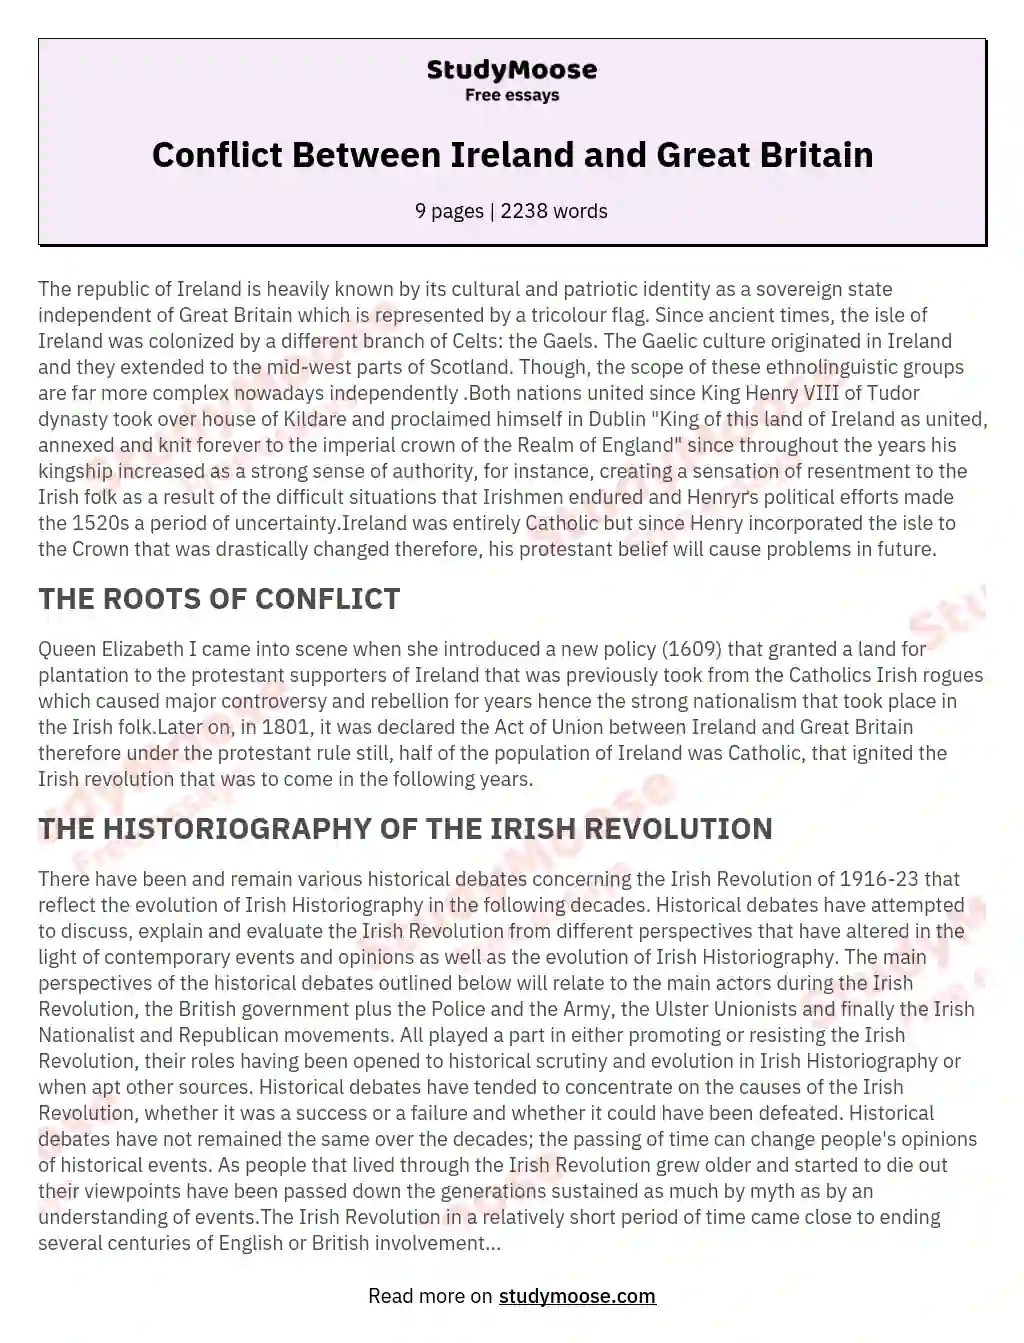 Conflict Between Ireland and Great Britain